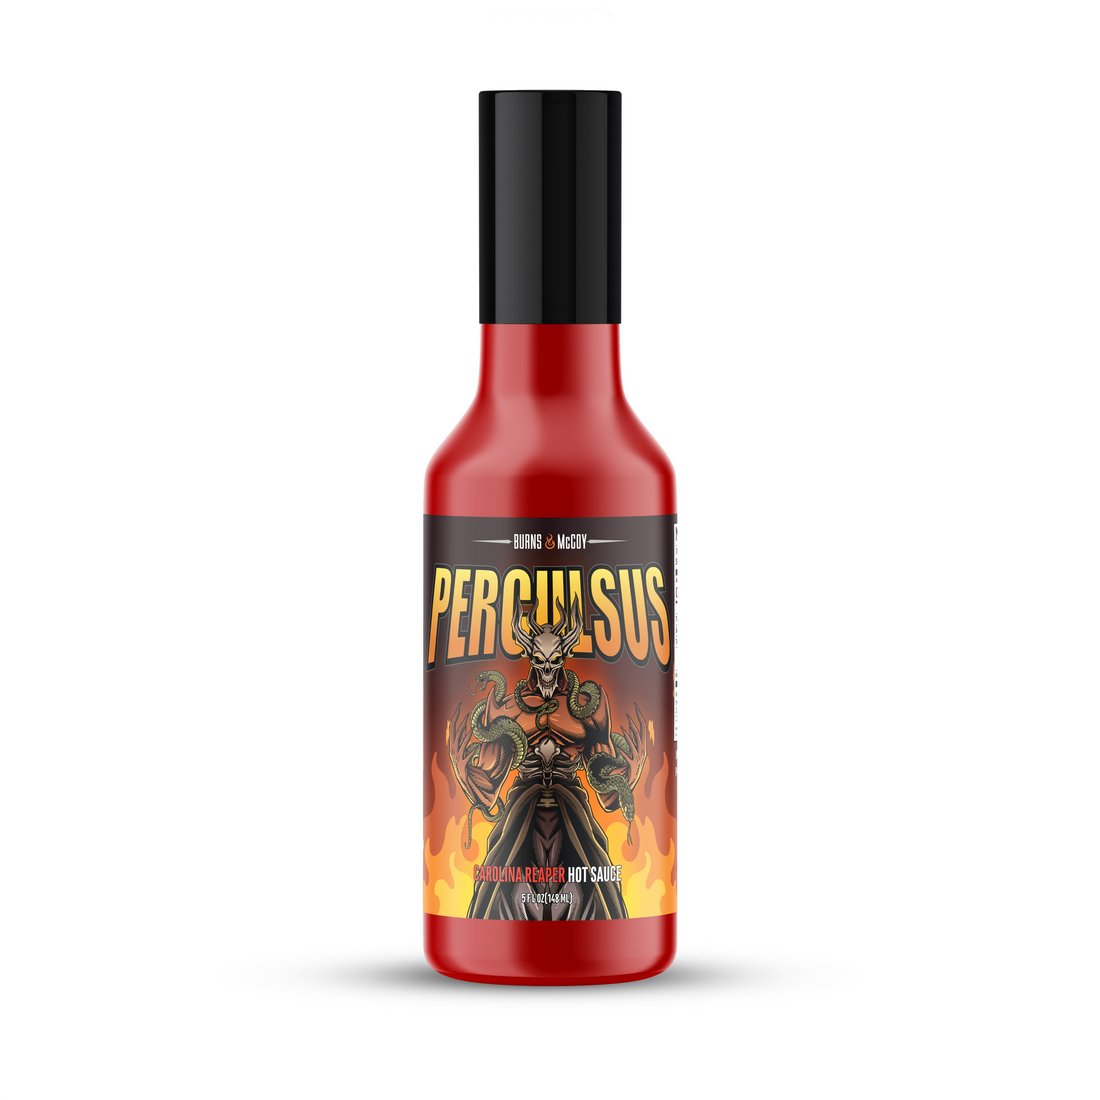 Perculsus - CAROLINA REAPER hot sauce